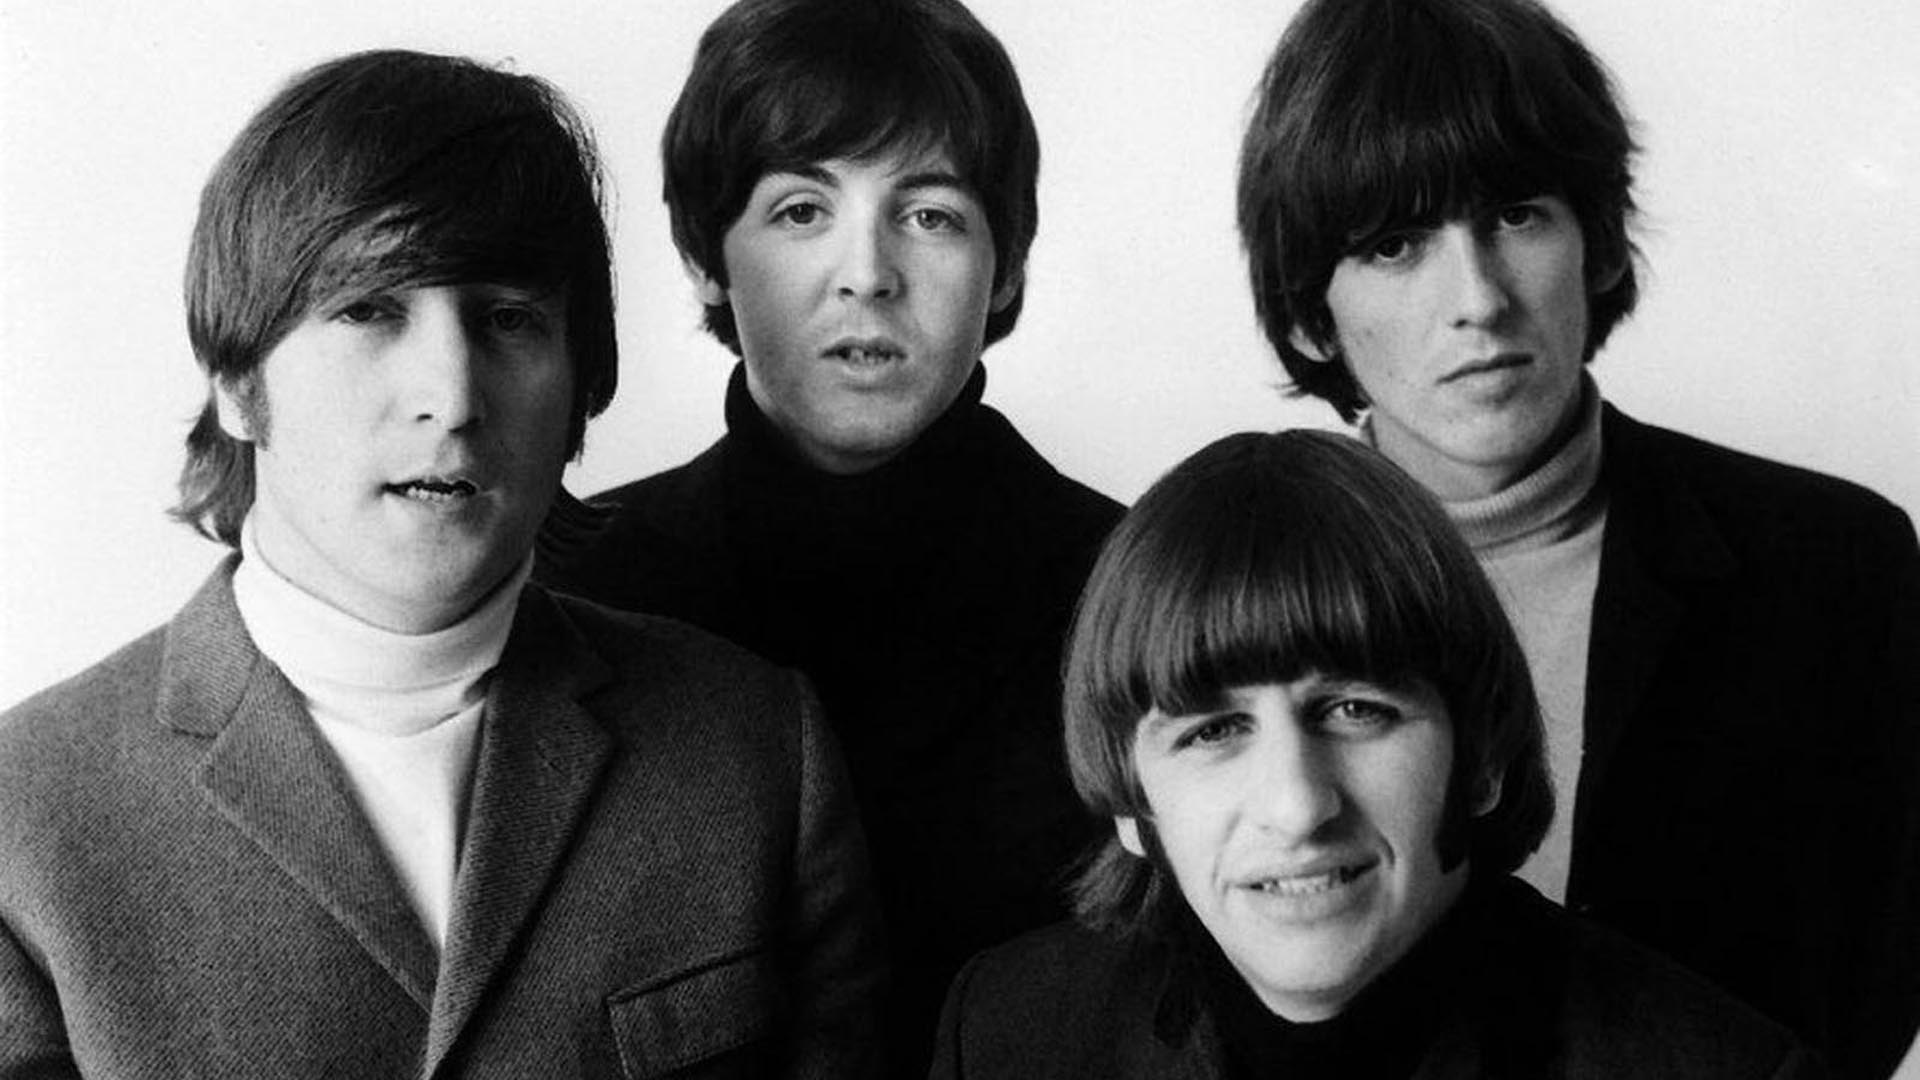 LET IT BE" de The Beatles regresa después de más de 50 años